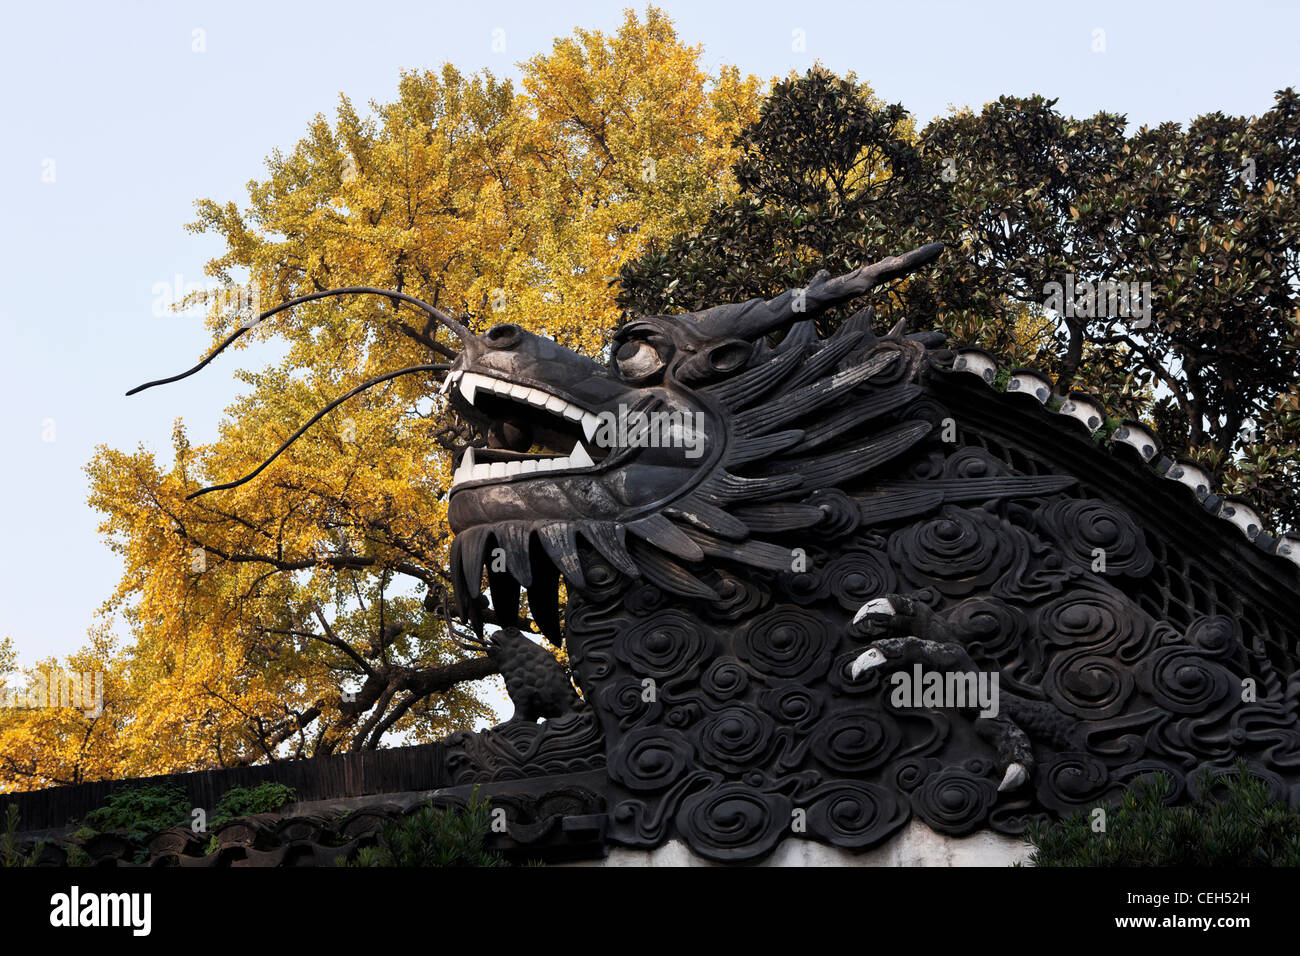 Chine Shanghai yu garden sculpture statue Sculpture en plein air loisirs arbre dragon garnir close-up à l'ancienne journée Banque D'Images